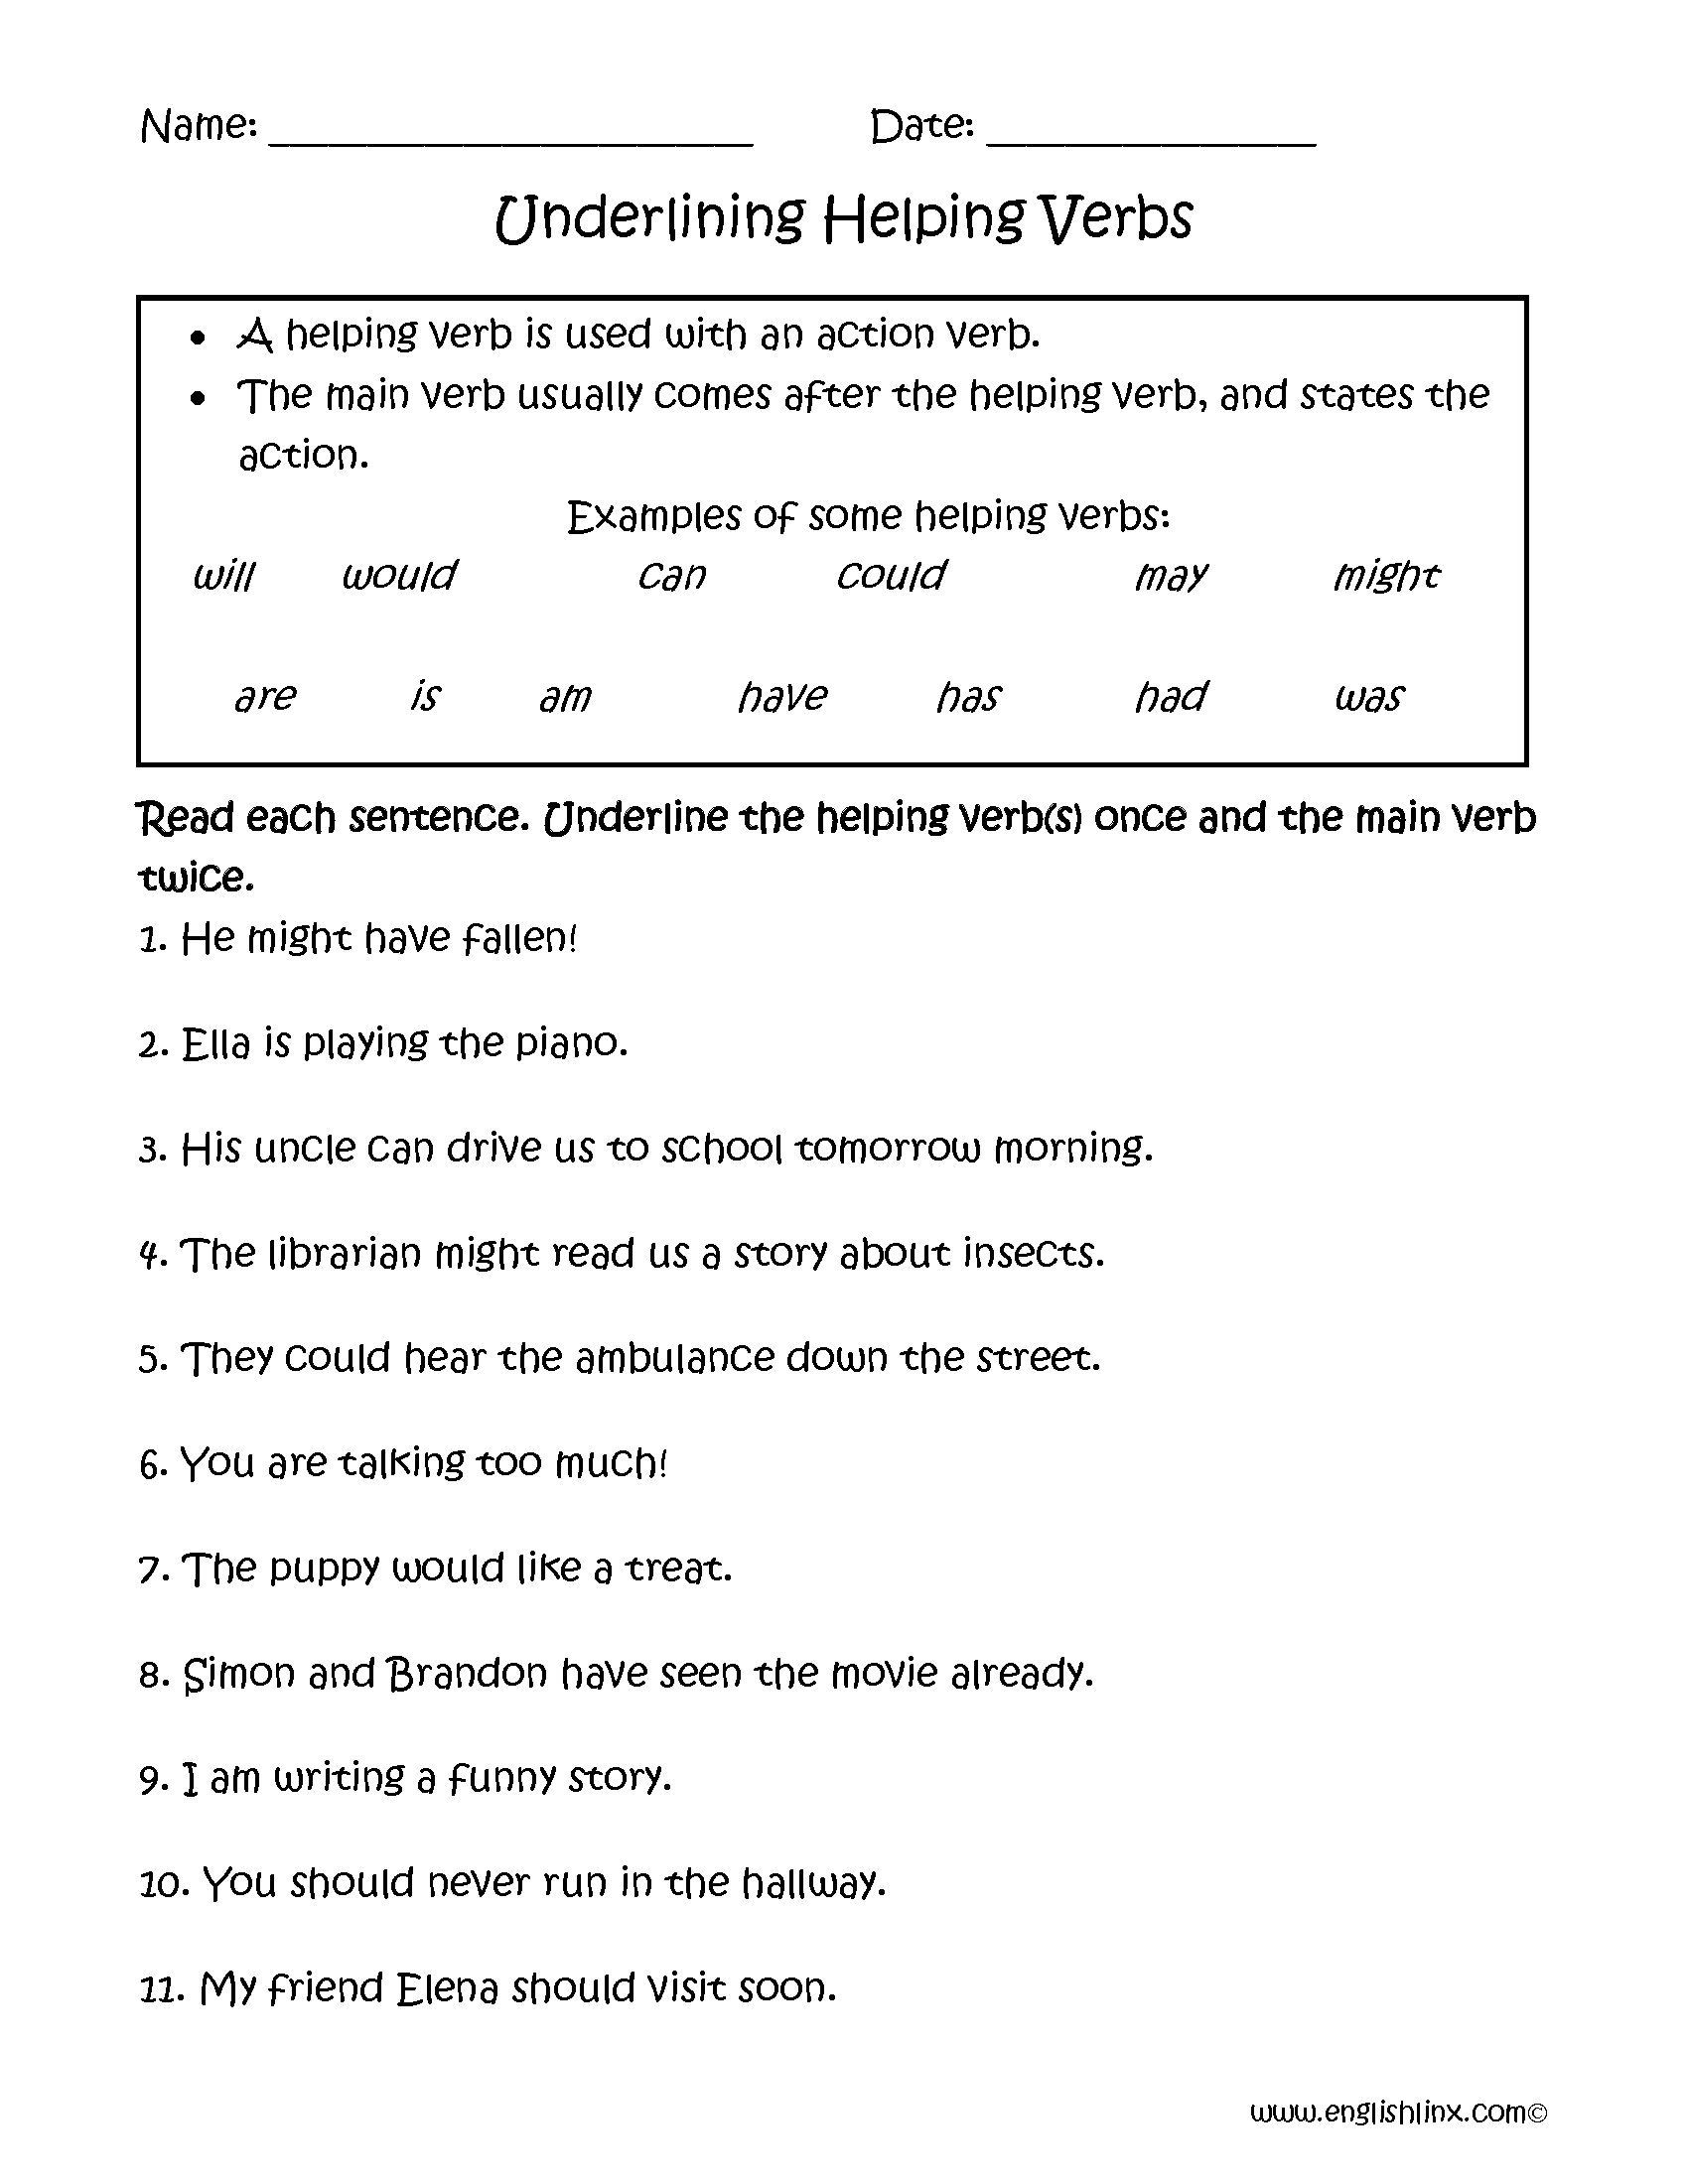 helping-verbs-worksheets-worksheetsday